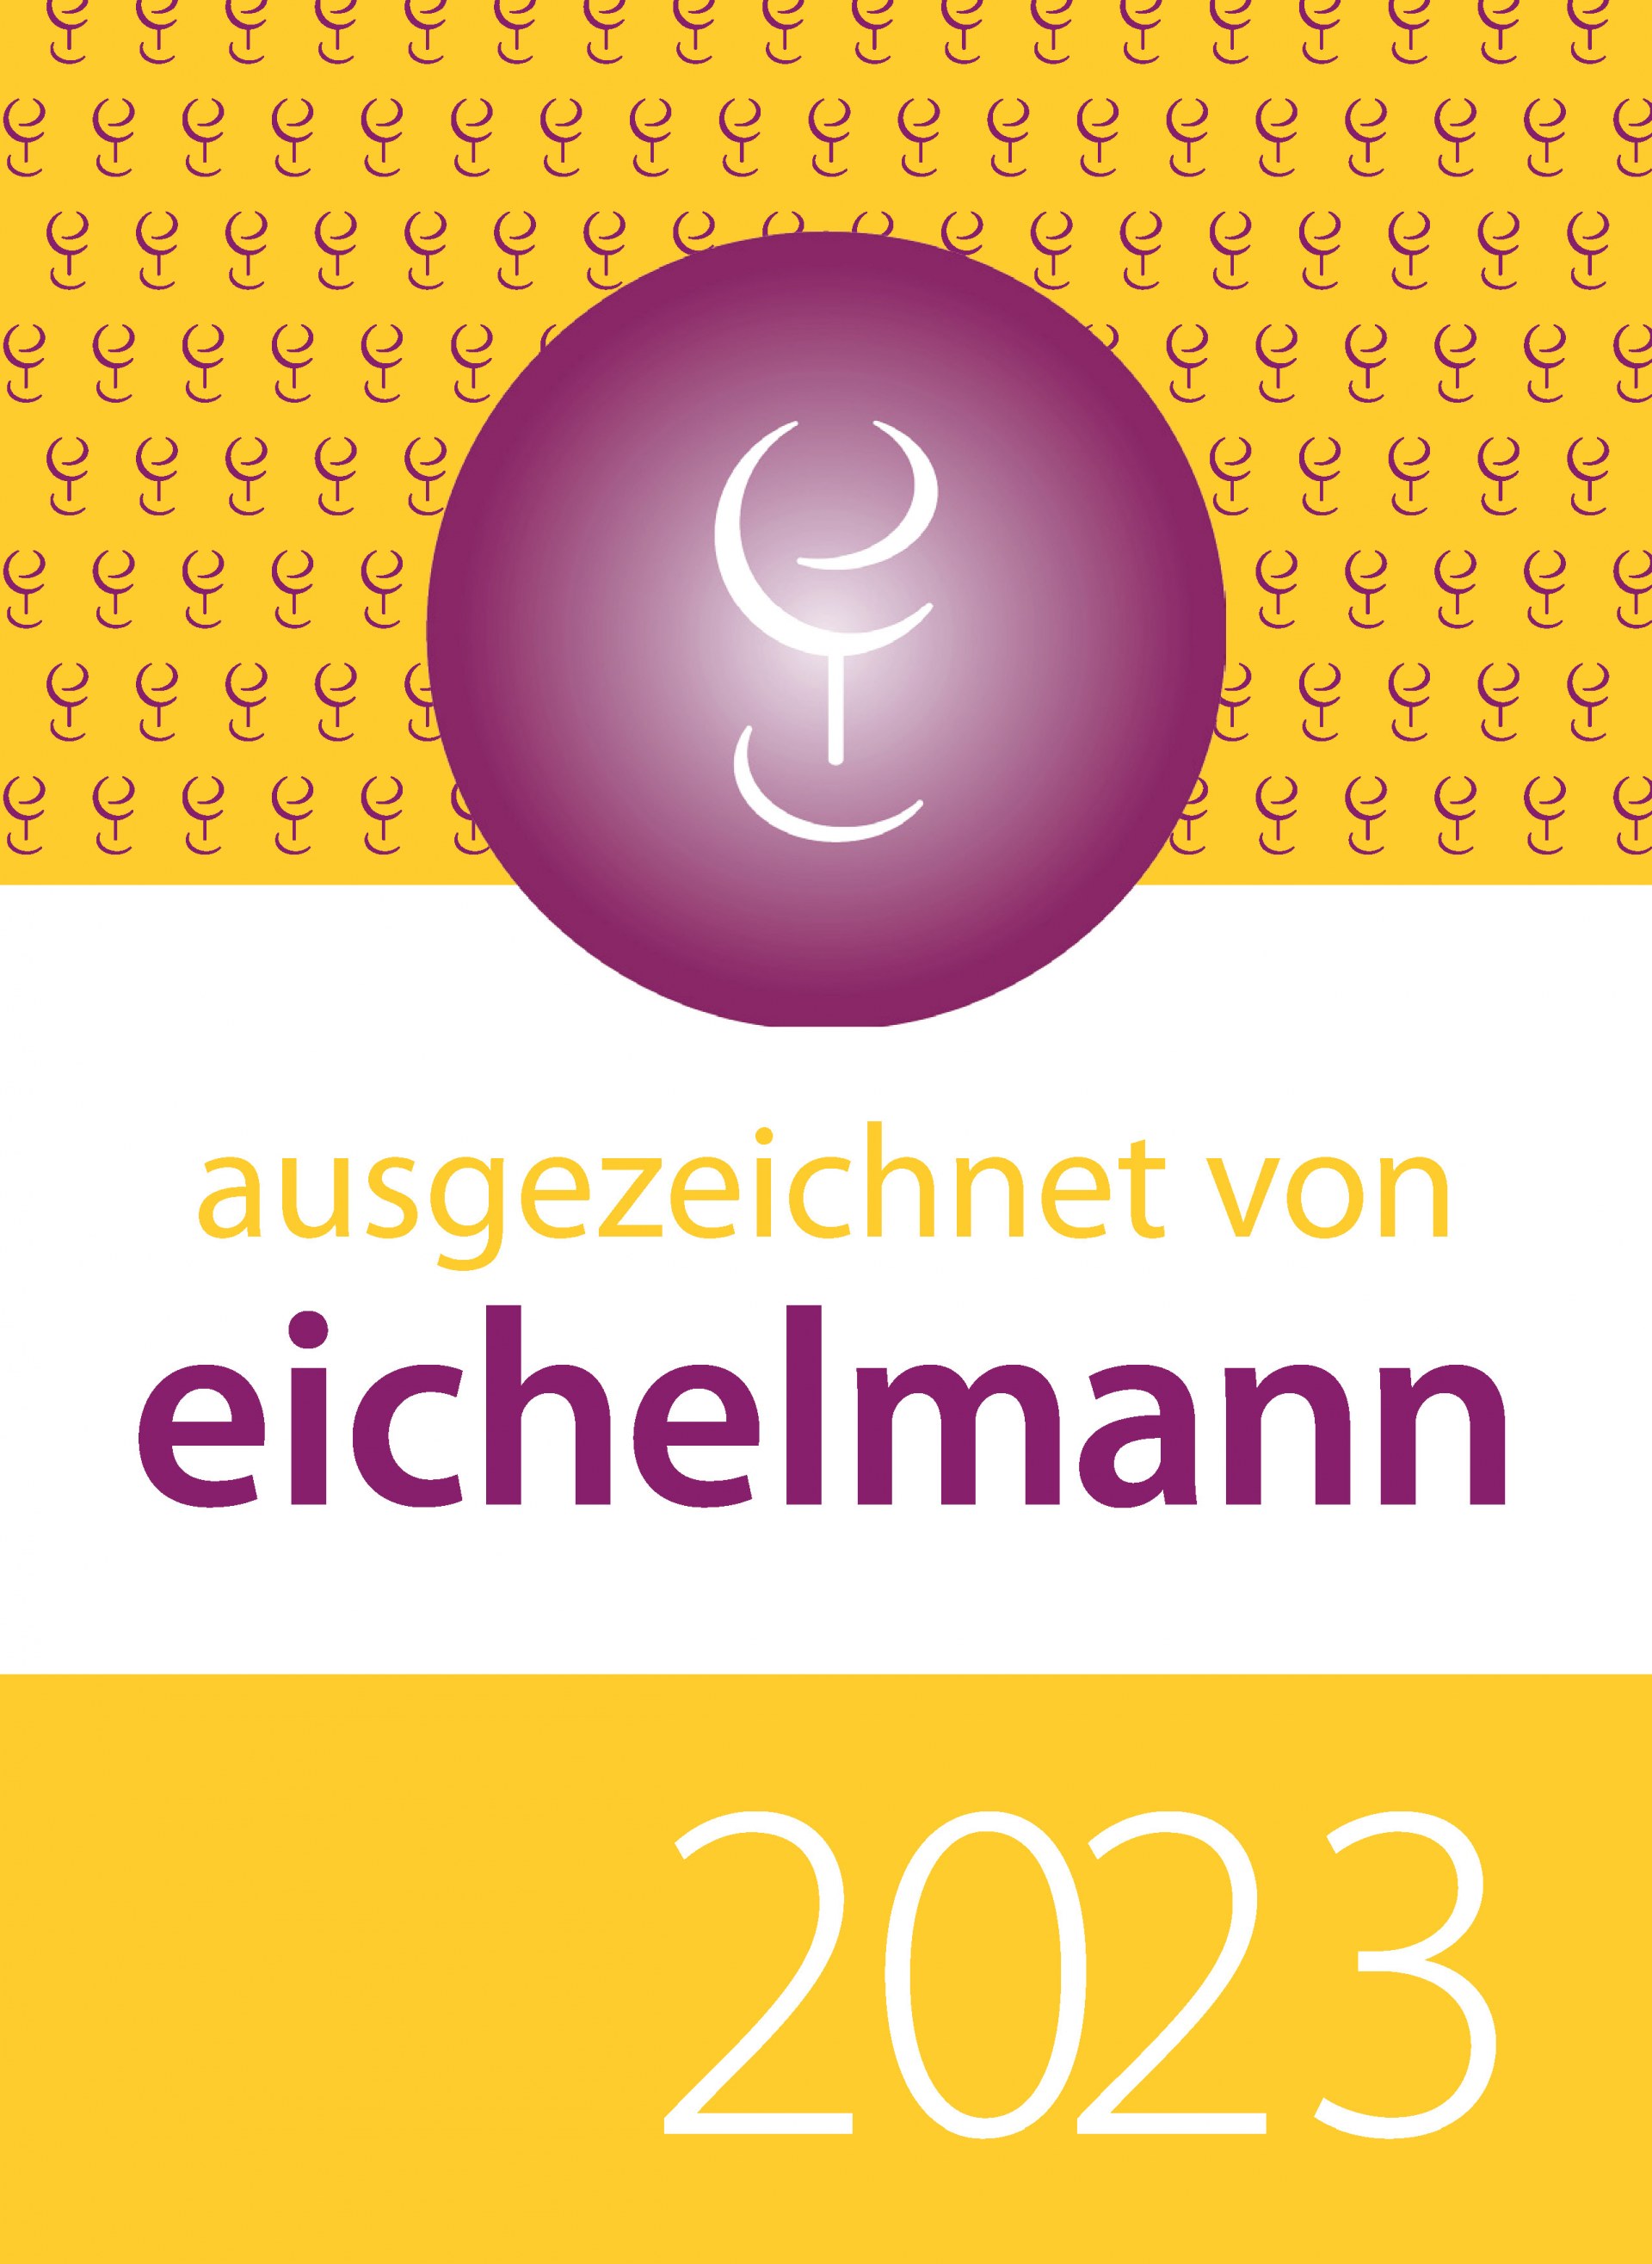 EICHELMANN 2023 / Presse / Weingut | © Weingut Siegrist GdbR